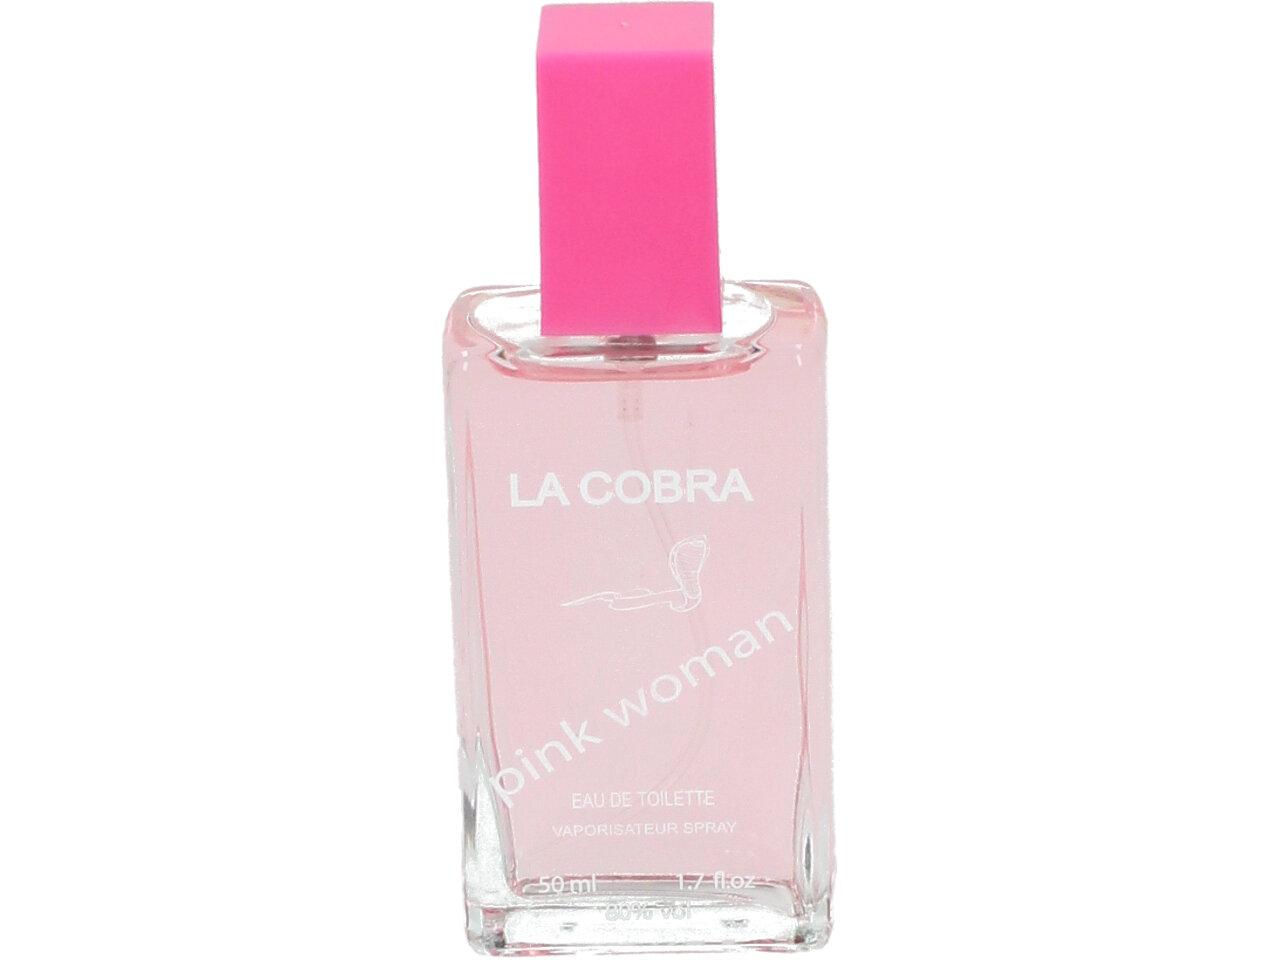 Toaletní voda dámská La Cobra pink woman